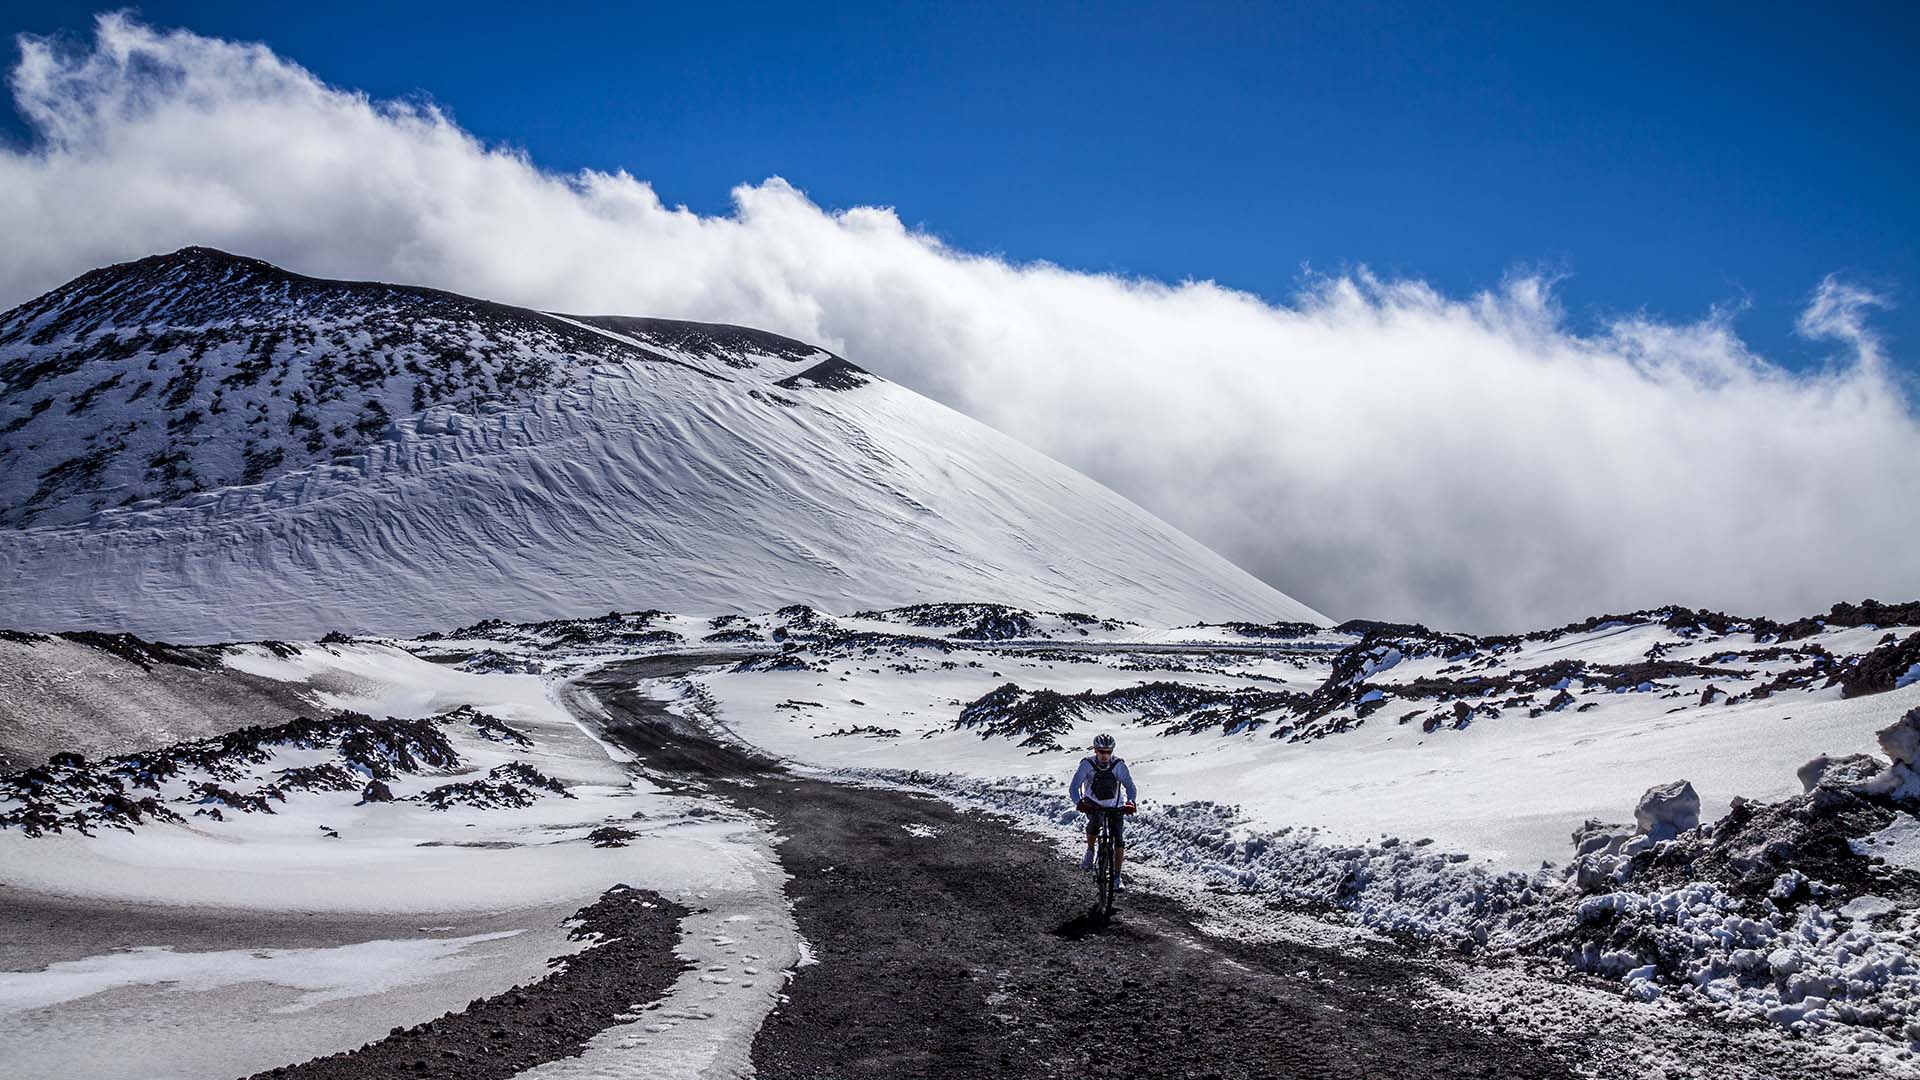 Escursione in mountai bike passando dal cratere Escrivà